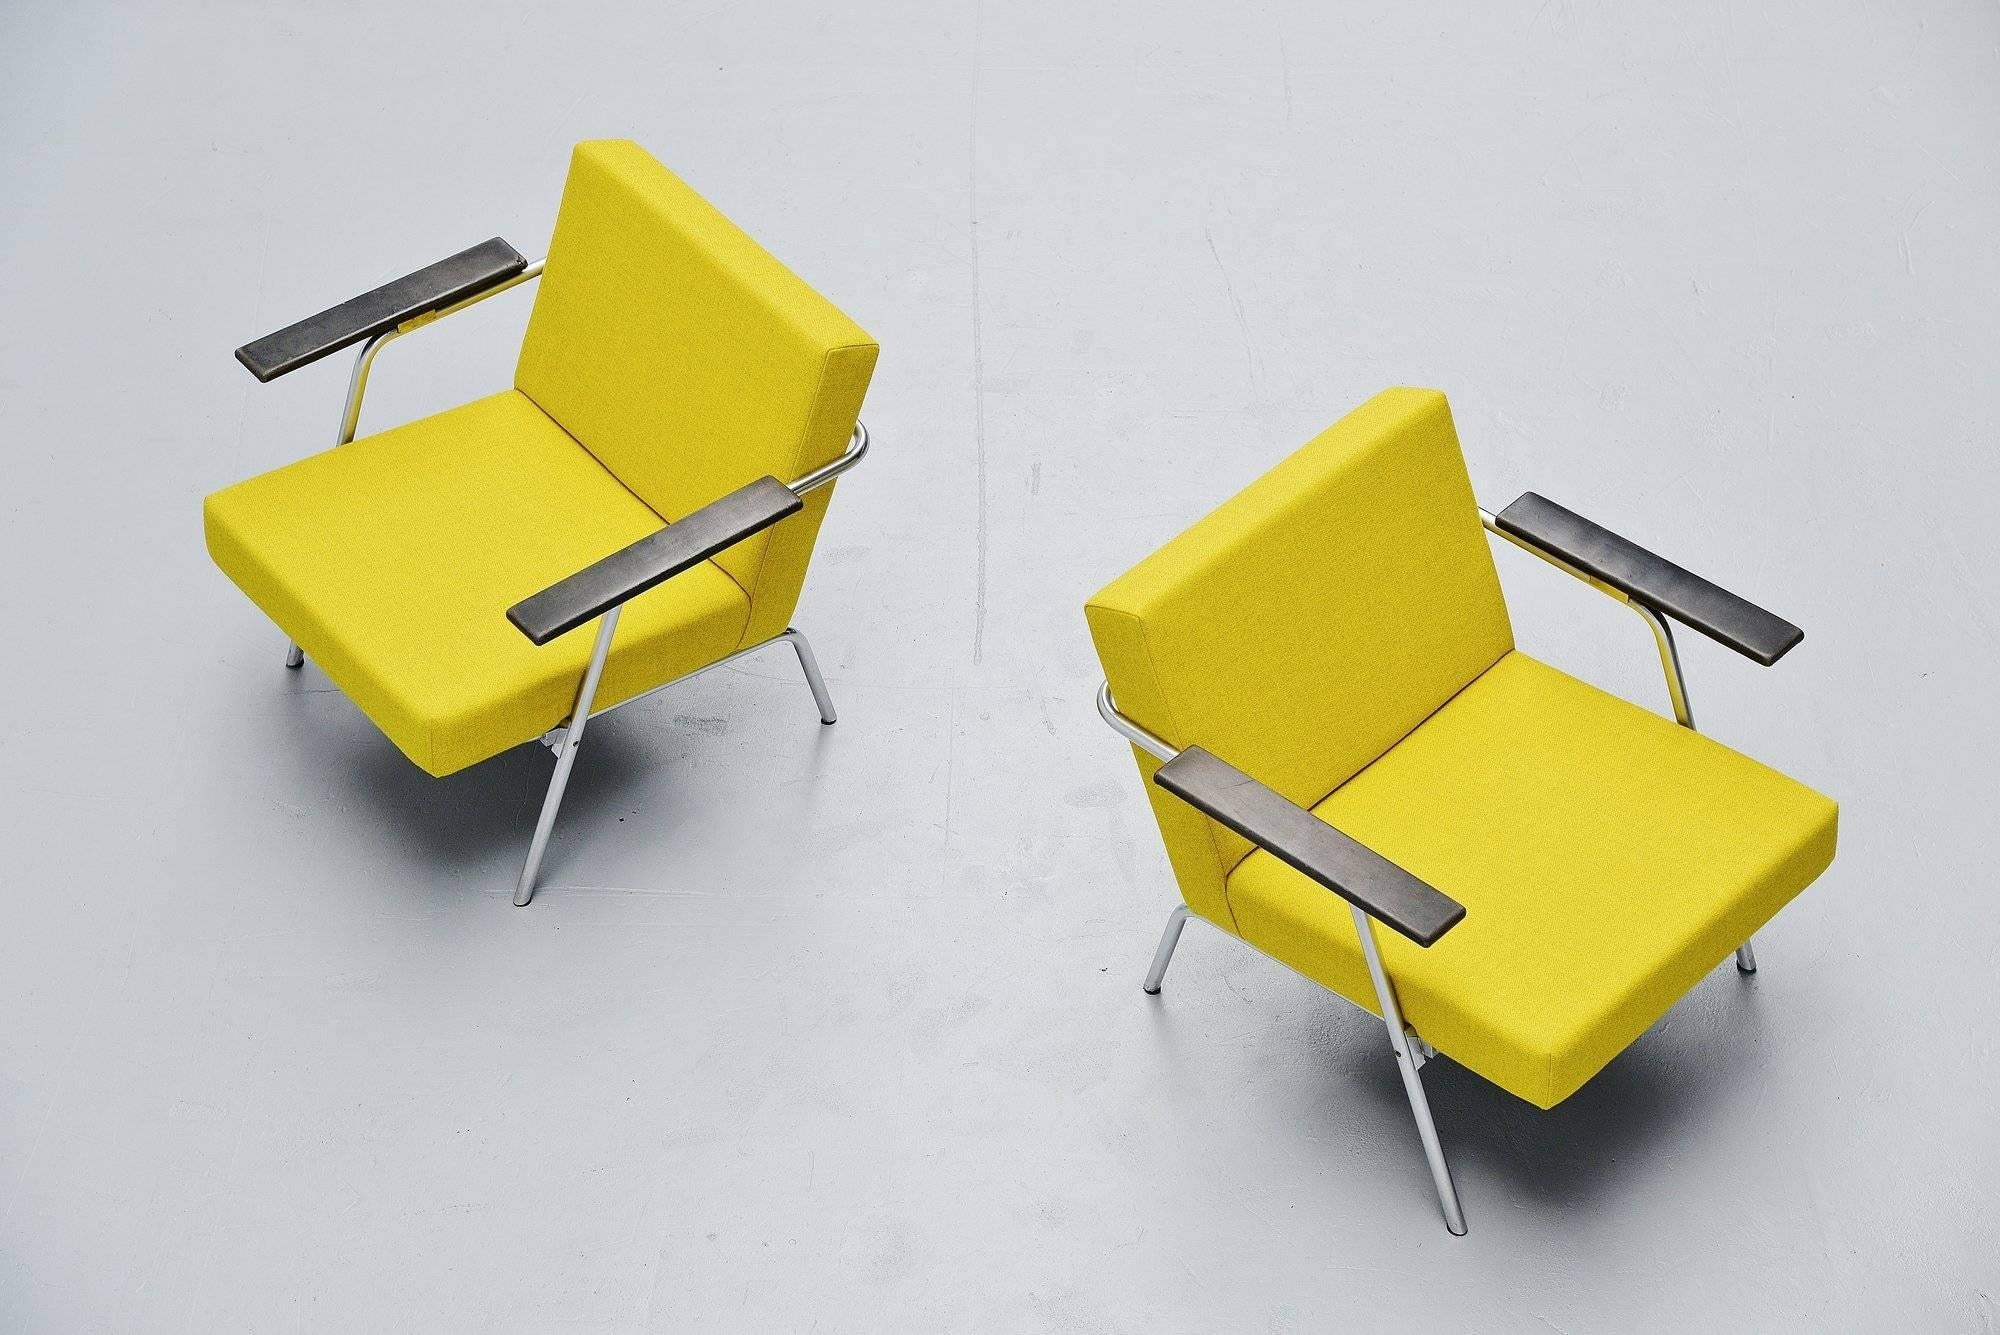 Rare et étonnante paire de fauteuils de Martin Visser pour 't Spectrum, Hollande, 1964. Ces chaises sont le modèle SZ02, documenté dans plusieurs livres et catalogues par 't Spectrum en tant que modèle SZ02. Ils n'ont été produits qu'entre 1964 et